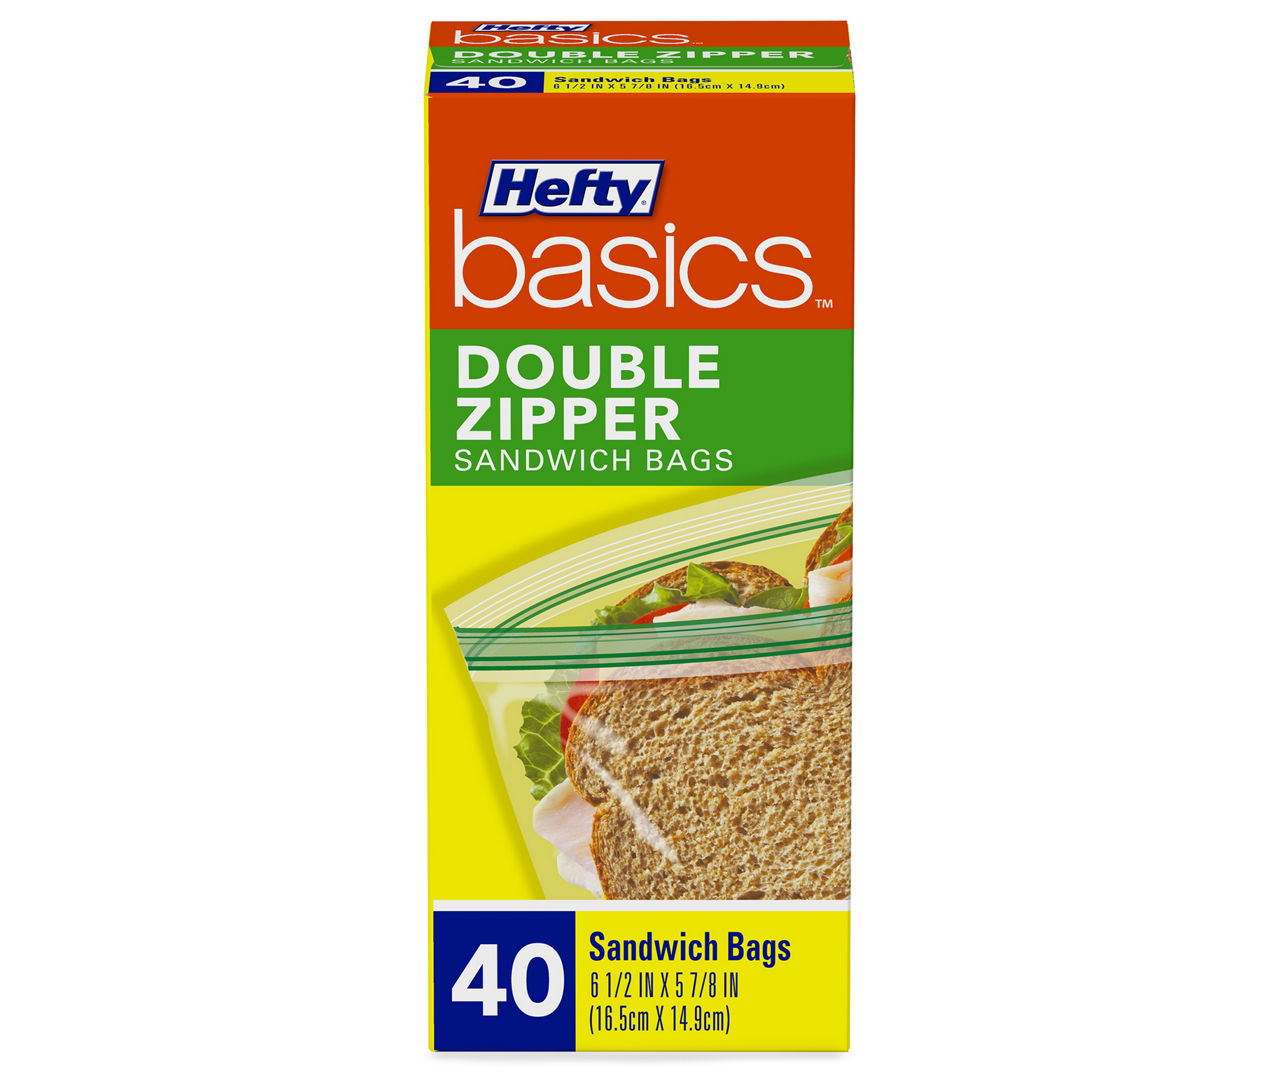 Hefty Basics Double Zipper Sandwich Bags, 40-Count